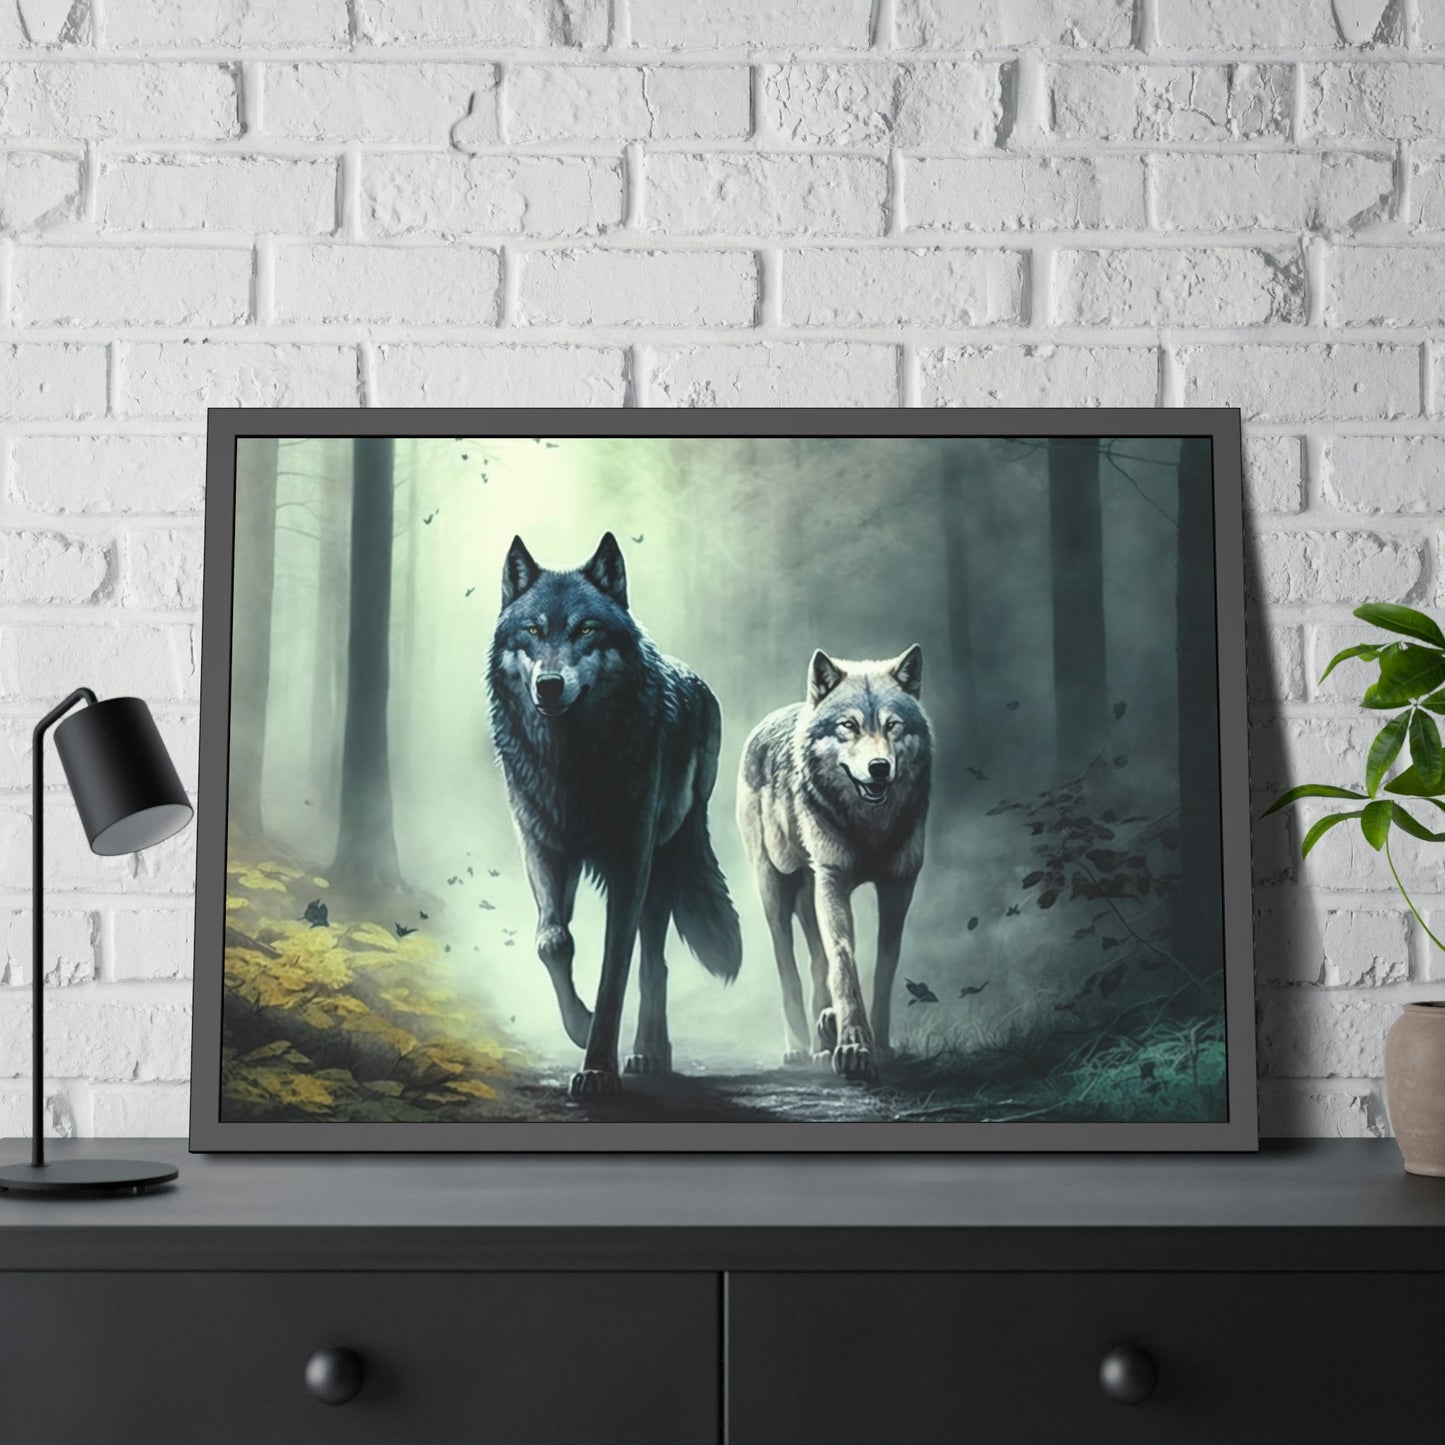 Spirit of the Wild: Fierce Wolfs in Action